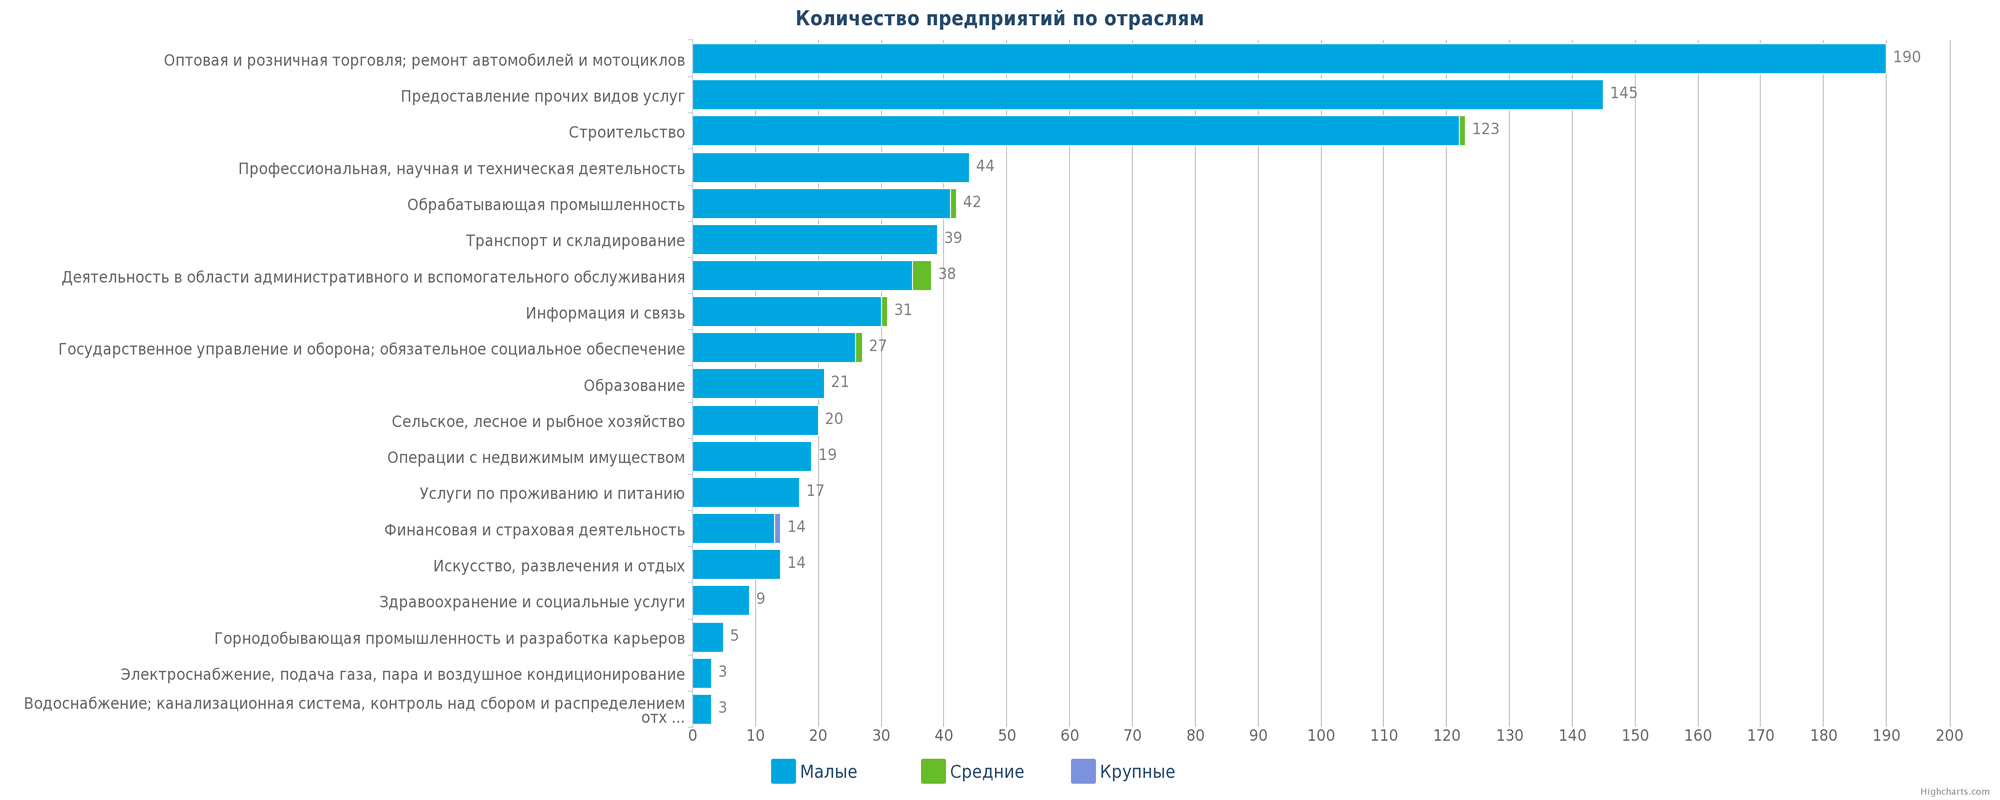 база данных новых предприятий в Казахстане по отраслям